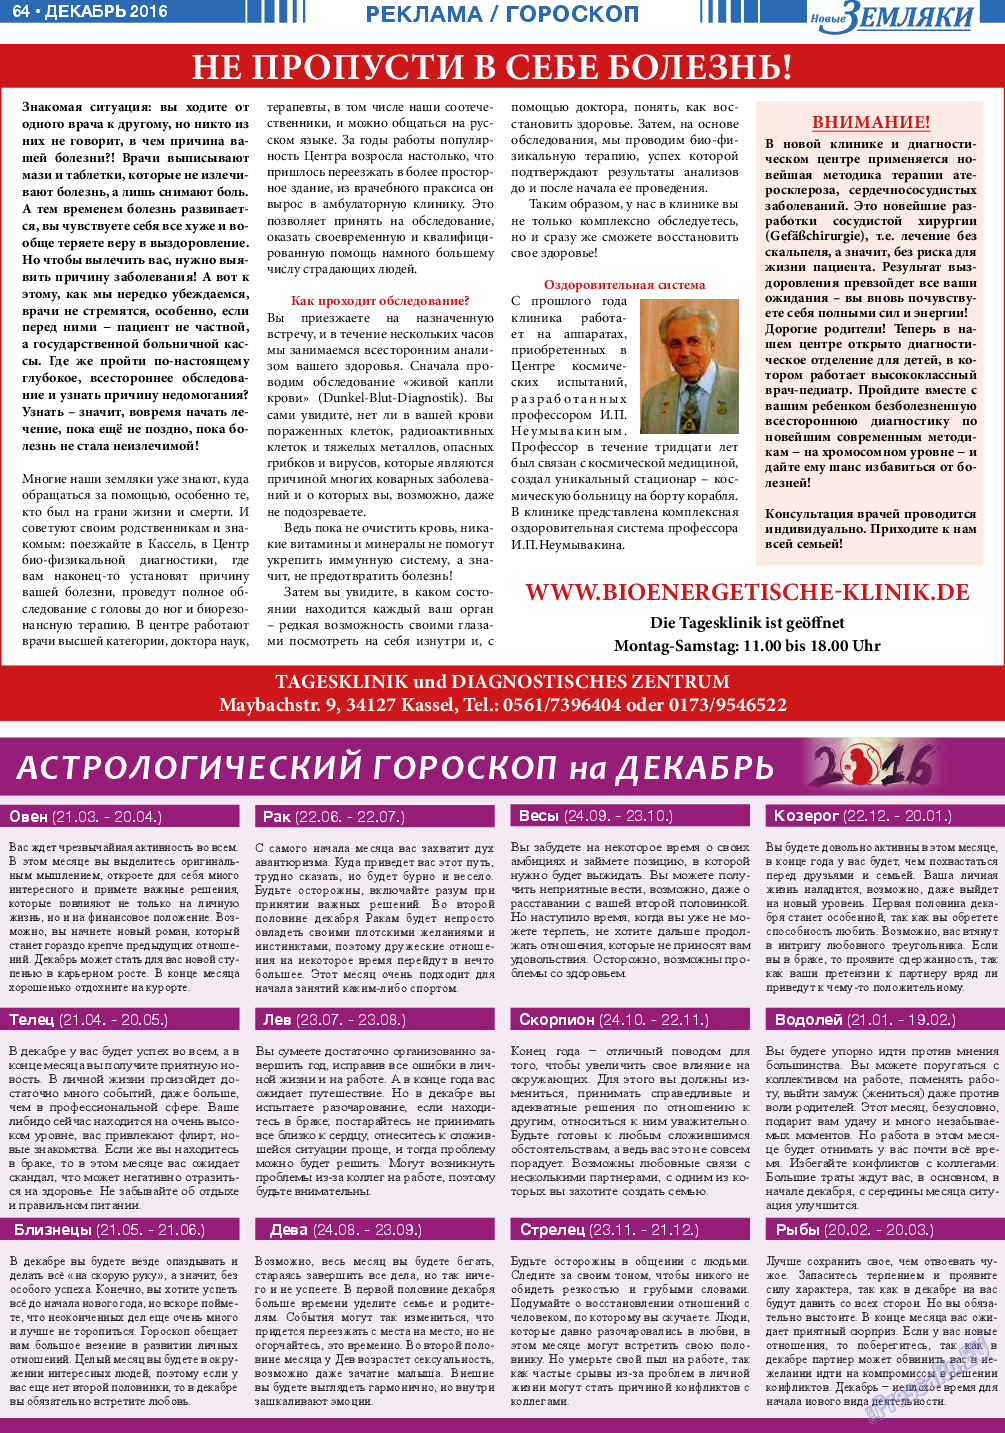 Новые Земляки (газета). 2016 год, номер 12, стр. 64